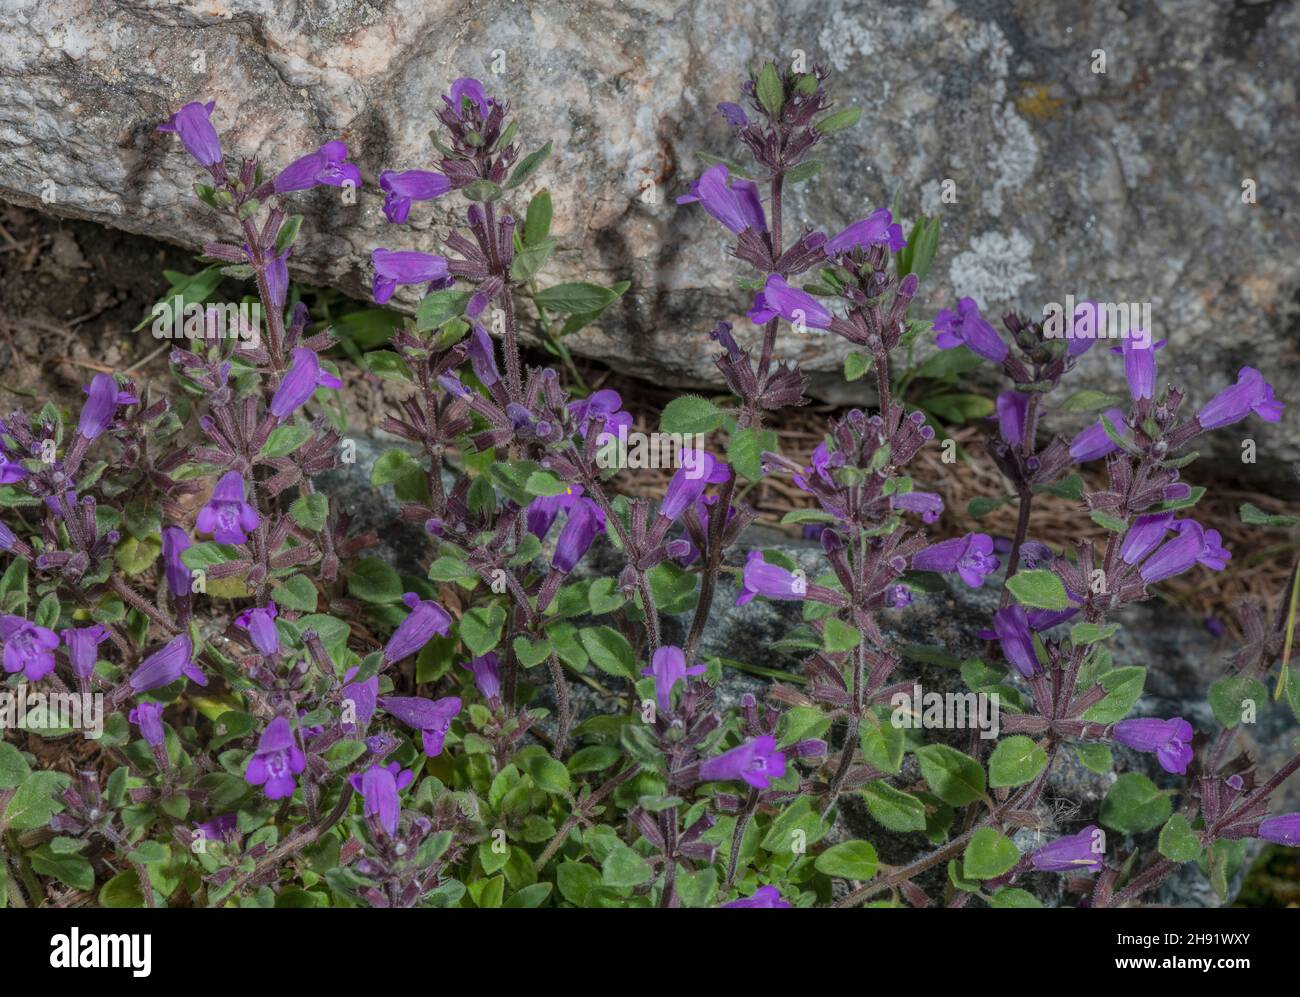 Alpino basilico-timo, Acinos alpino, in fiore oino calcareo Ledge, Alpi. Foto Stock